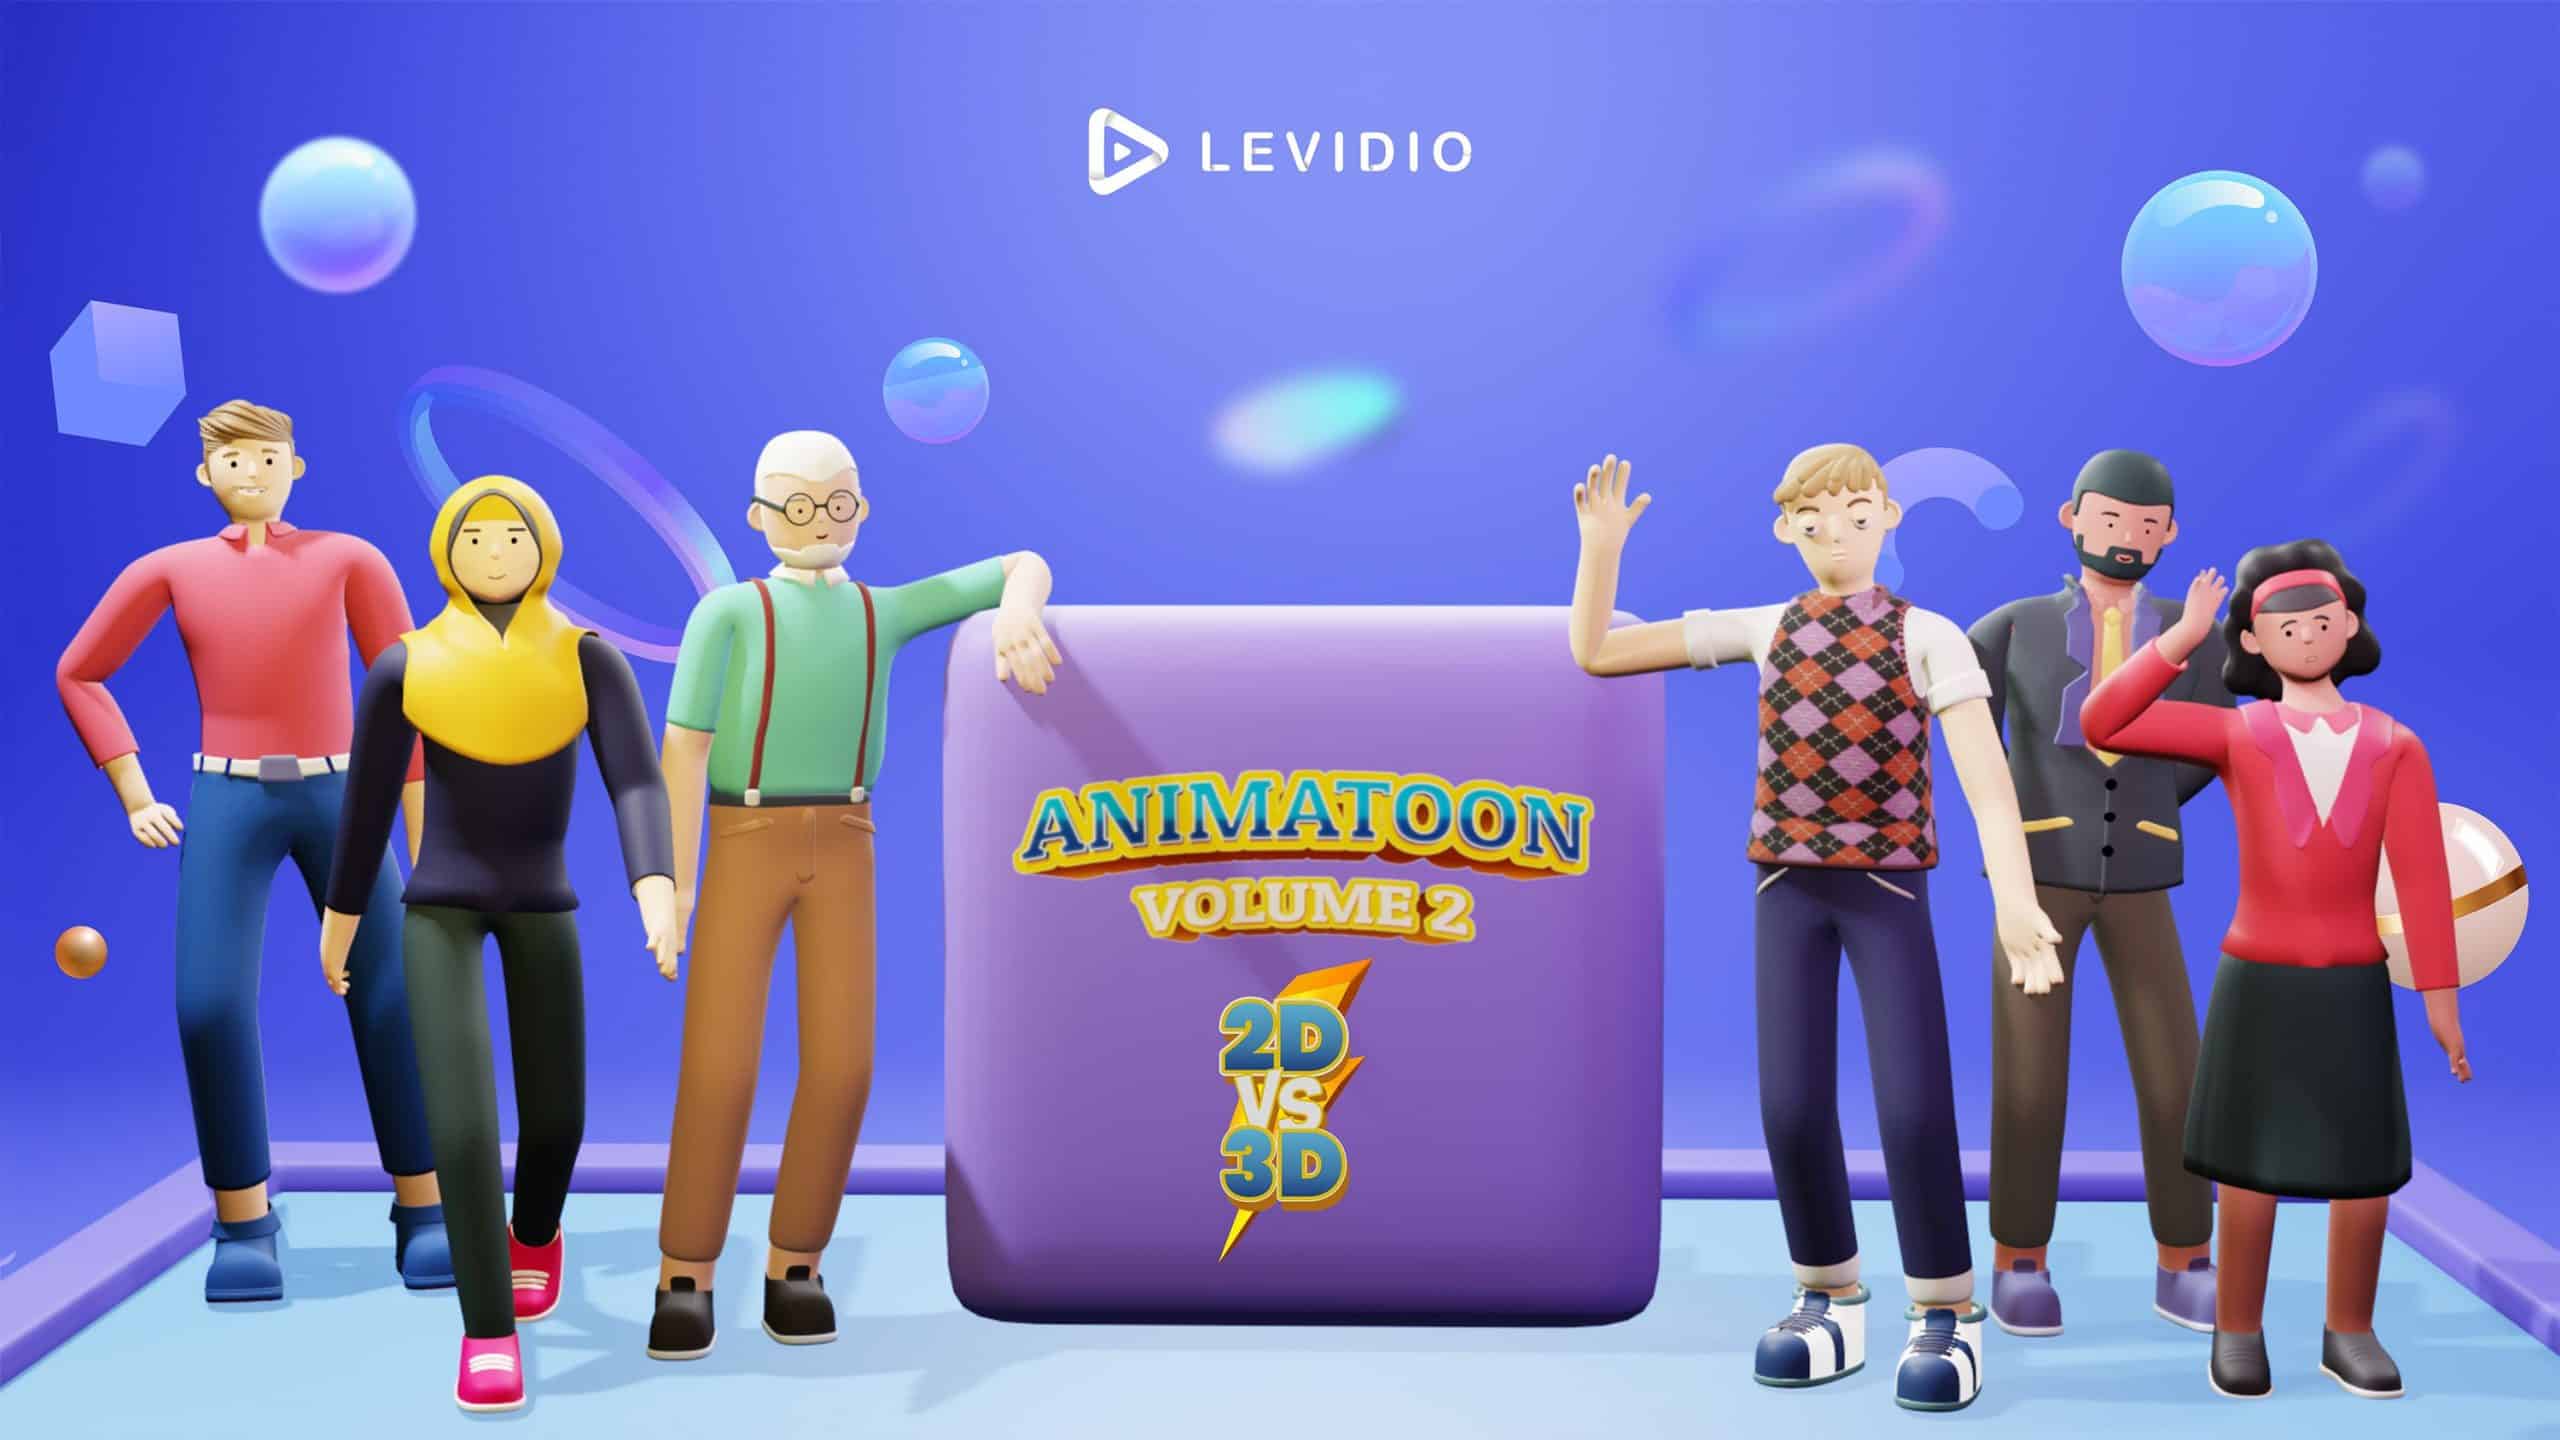 Levidio Animatoon Vol 2 Menjadi Strategi Bisnis Online Untuk Pemula